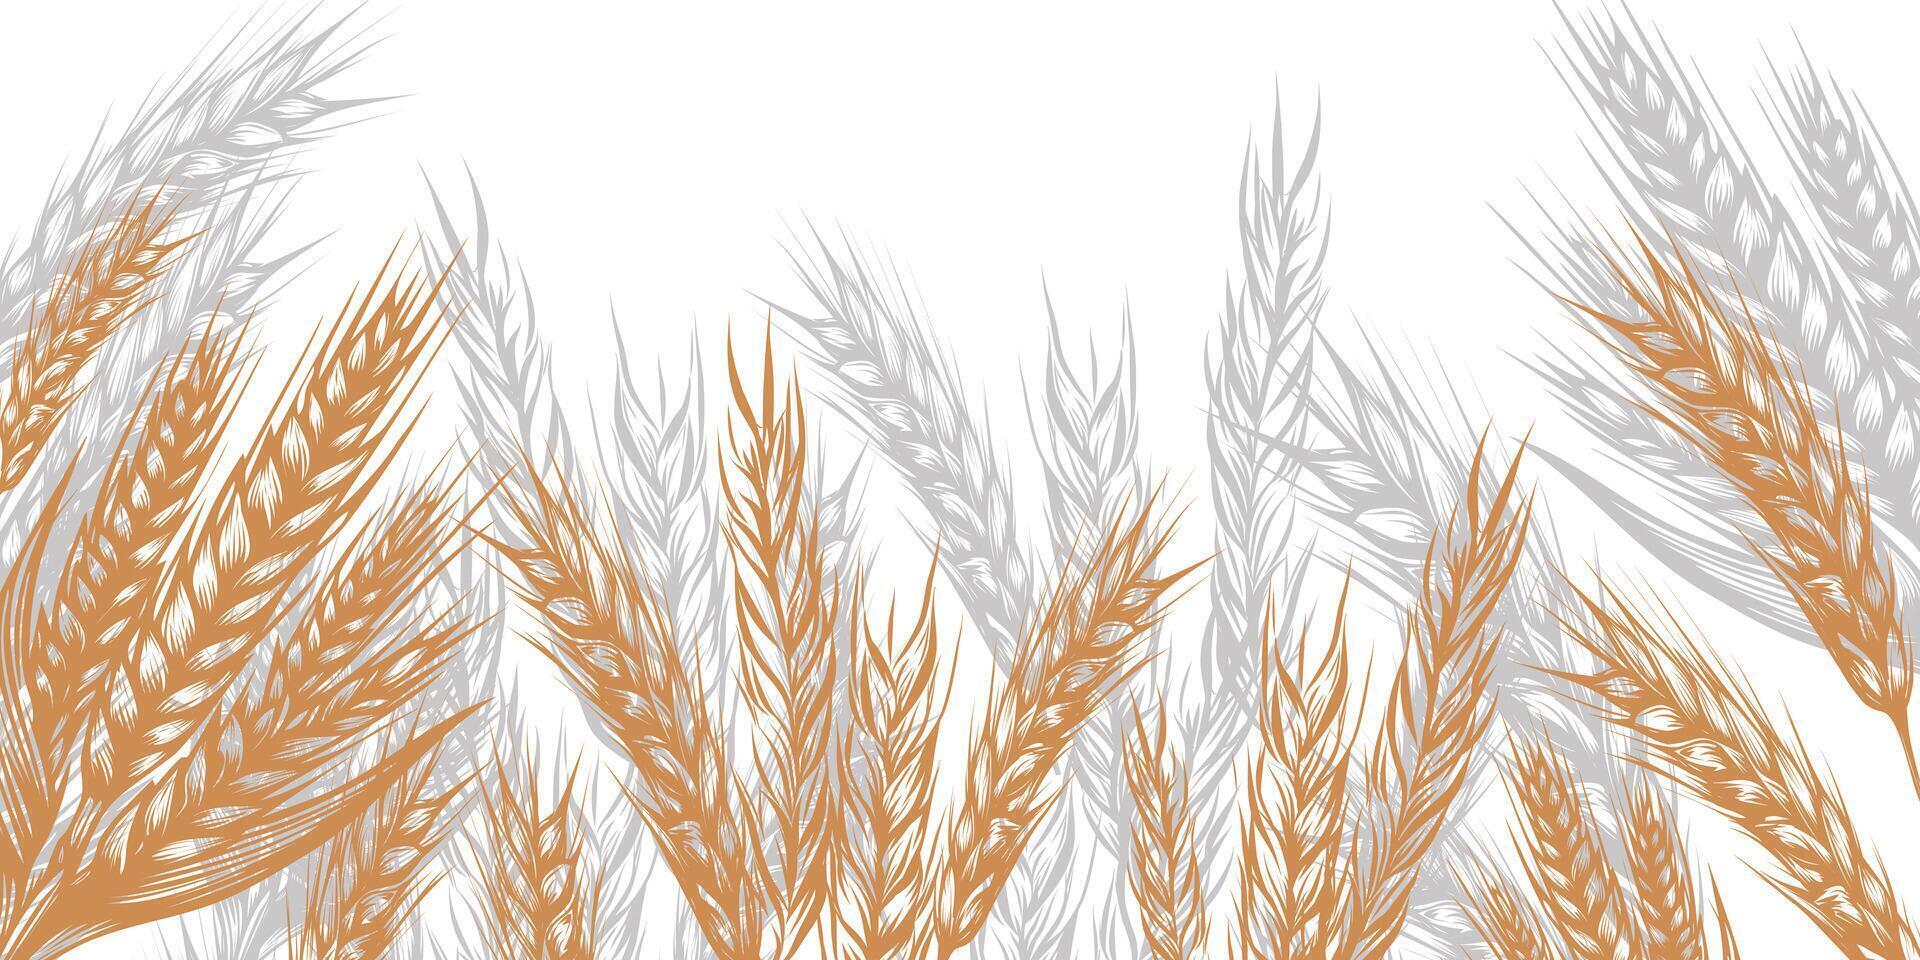 cereal frontera con espiguillas de trigo en bosquejo vector ilustración aislado en blanco. orejas de centeno, cebada, avena, mijo para decoración, embalaje y ventana diseño, panadería.